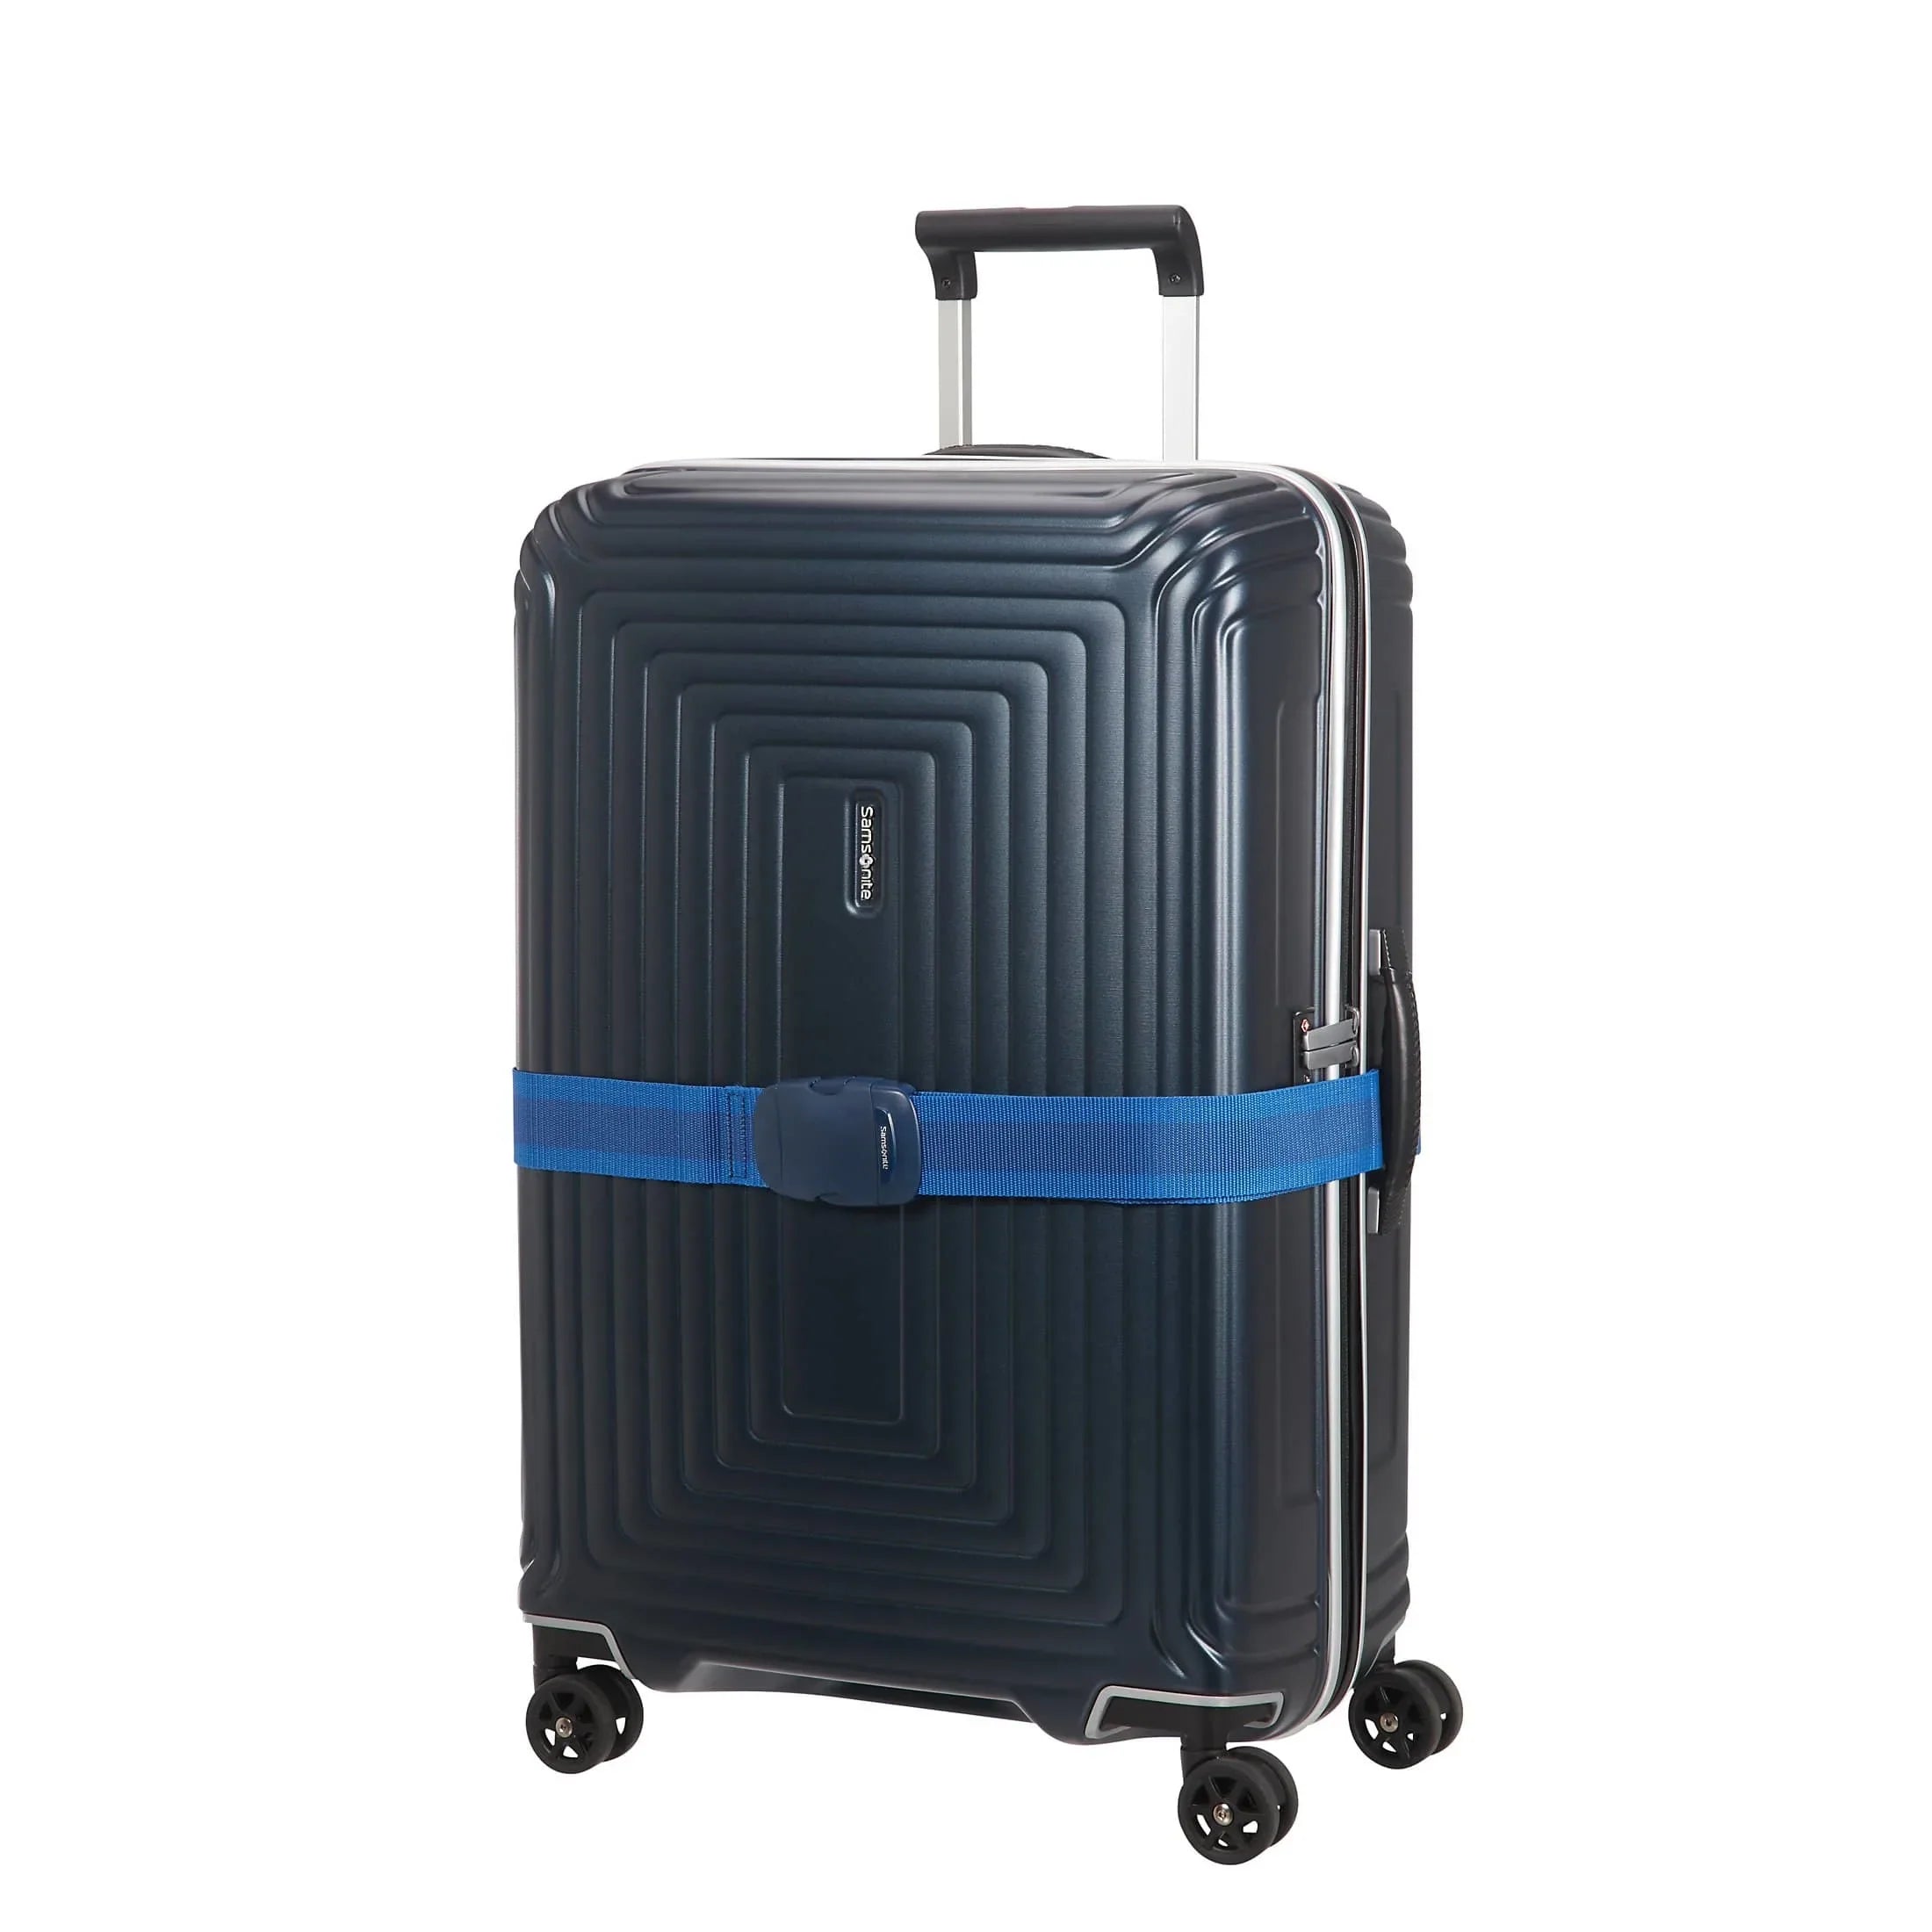 Samsonite Travel Accessories suitcase strap 50mm - black